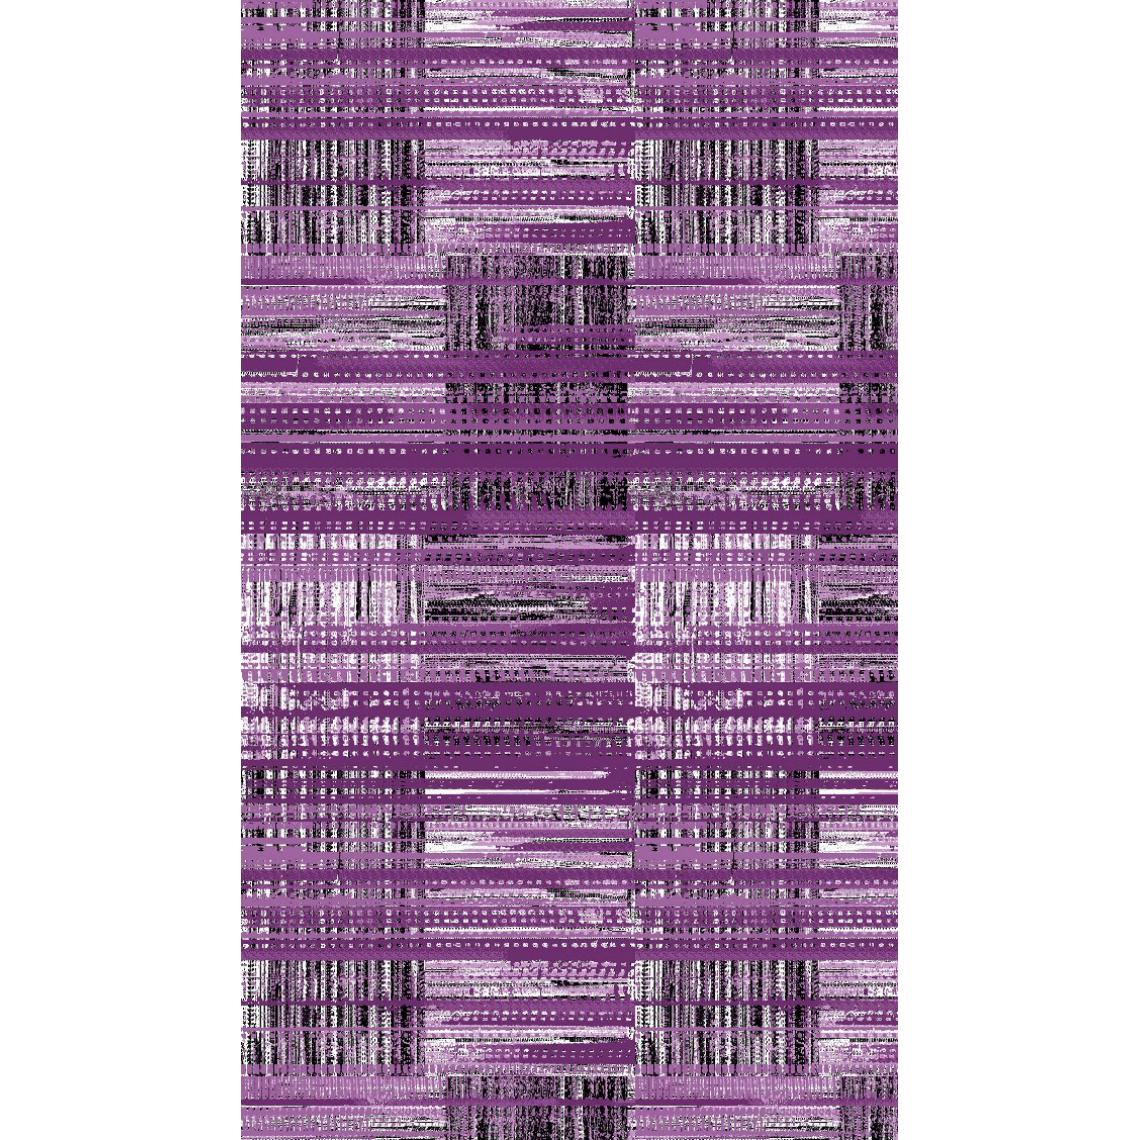 Homemania - HOMEMANIA Tapis Imprimé Purple 1 - Géométrique - Décoration de Maison - Antidérapant - Pour Salon, séjour, chambre à coucher - Multicolore en Polyester, Coton, 80 x 120 cm - Tapis